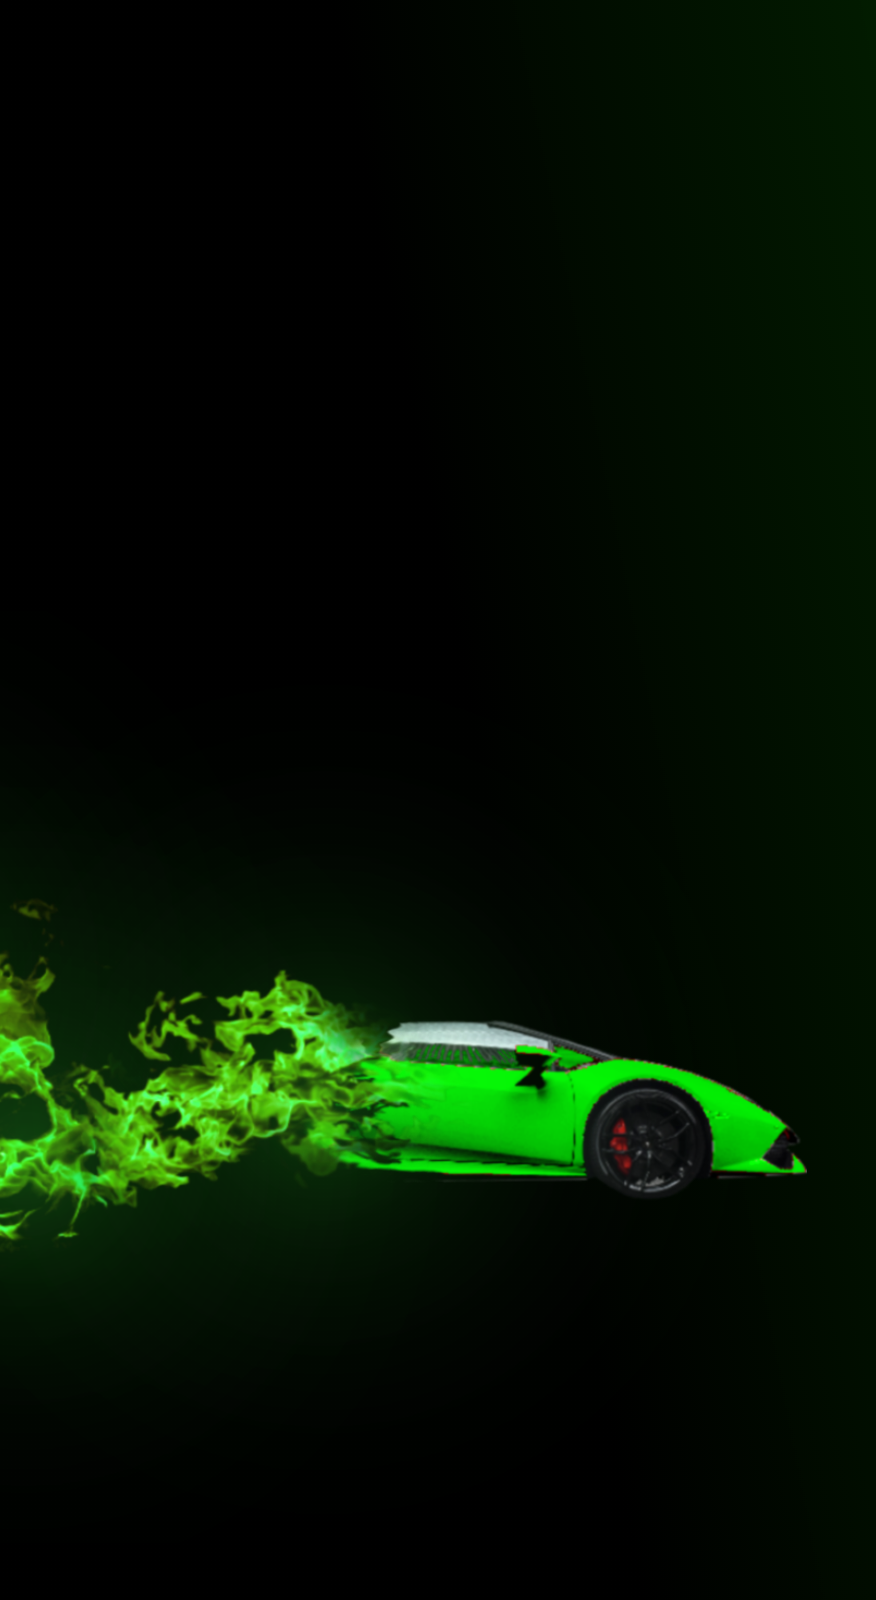 Hãy để Flaming Lamborghini Wallpaper biến điện thoại của bạn trở thành một tác phẩm nghệ thuật độc đáo. Thiết kế đầy màu sắc hớp hồn này chắc chắn sẽ làm bạn thấy đầy cảm hứng và năng lượng. Hãy nhấp vào hình ảnh ngay bây giờ để cập nhật cho mình một trang điện thoại hoàn toàn mới.